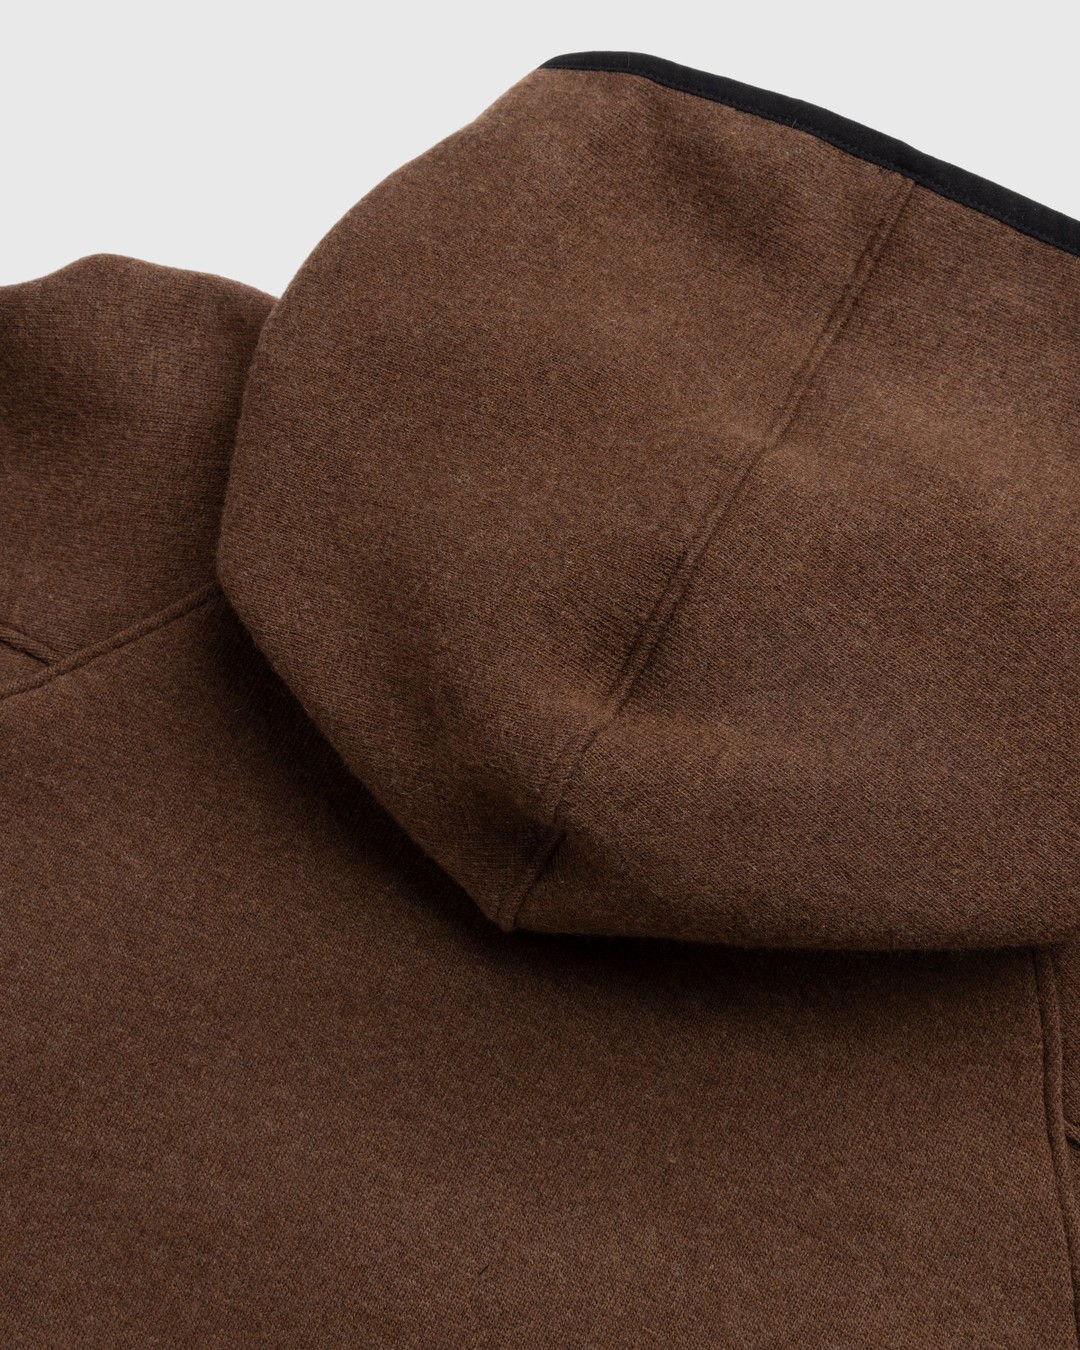 RANRA – Peysa Hooded Jacket Brown - Outerwear - Brown - Image 4